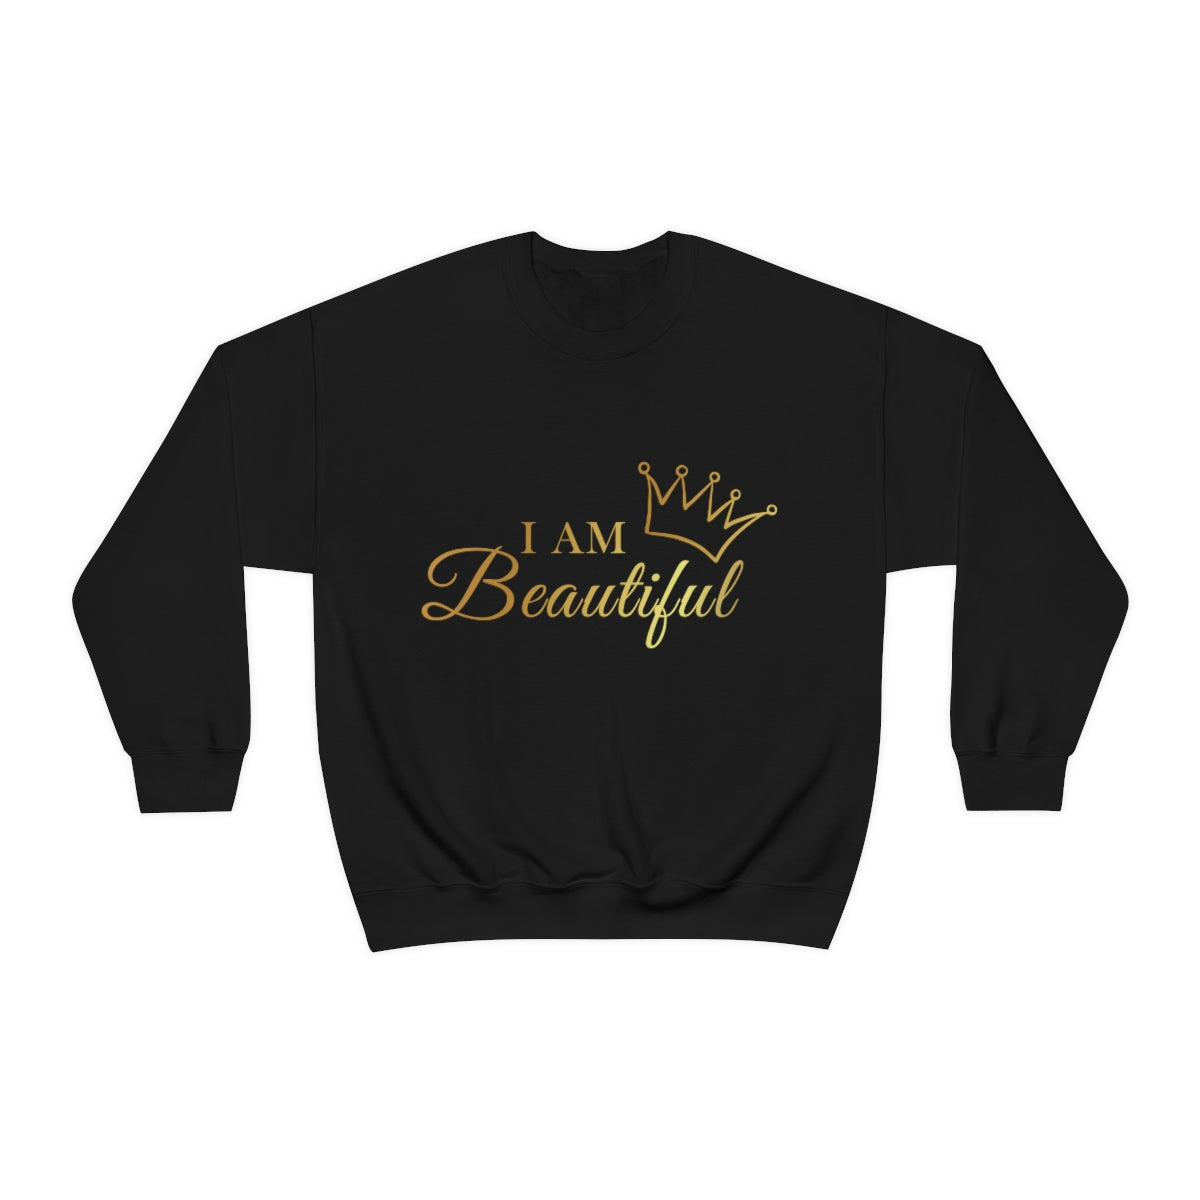 Affirmation Feminist Pro Choice Sweatshirt Unisex  Size –I Am Beautiful Printify